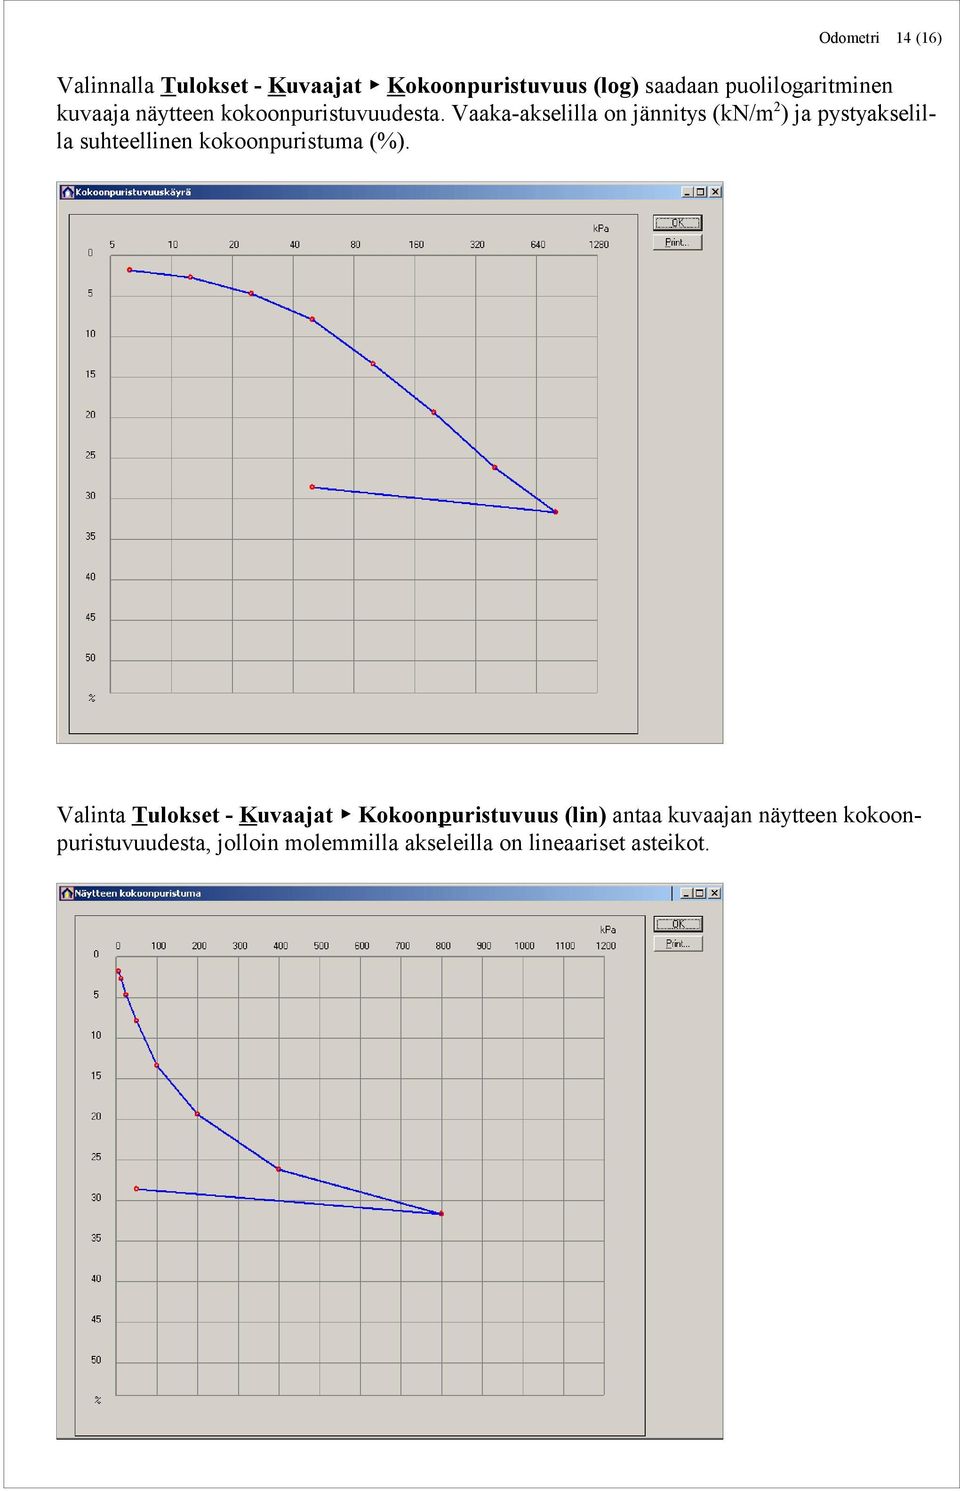 Vaaka-akselilla on jännitys (kn/m 2 ) ja pystyakselilla suhteellinen kokoonpuristuma (%).